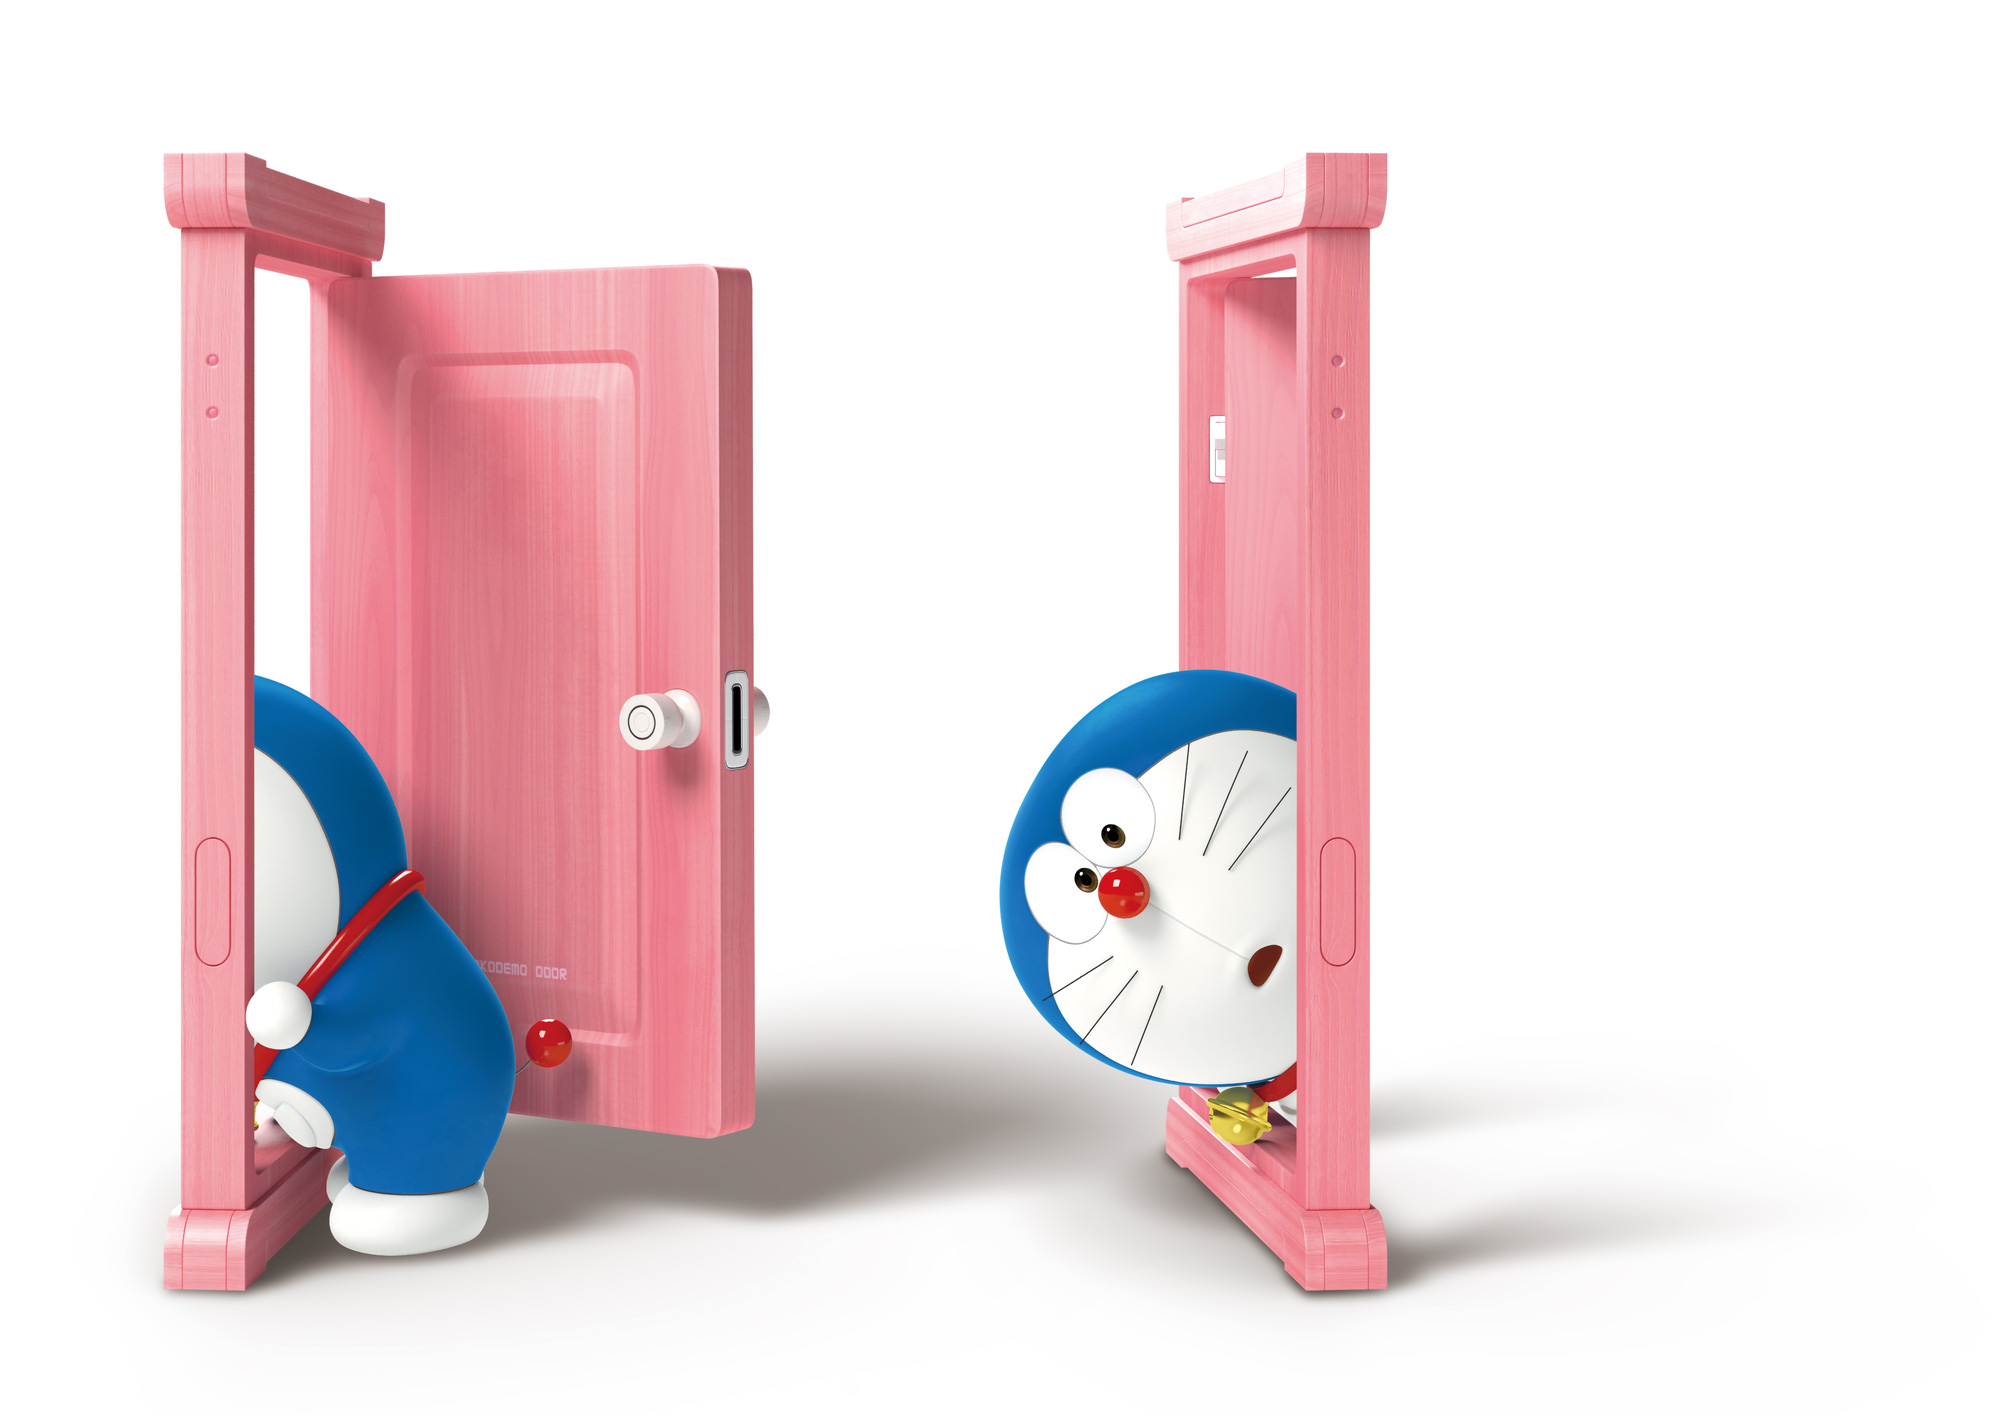 Khám phá bảo bối Doraemon, một thế giới phép thuật đầy màu sắc và hài hước đang chờ đón bạn. Hãy cùng chú mèo máy và nhóm bạn thân trải nghiệm những cuộc phiêu lưu đầy thú vị để tìm kiếm bảo bối bí ẩn này.